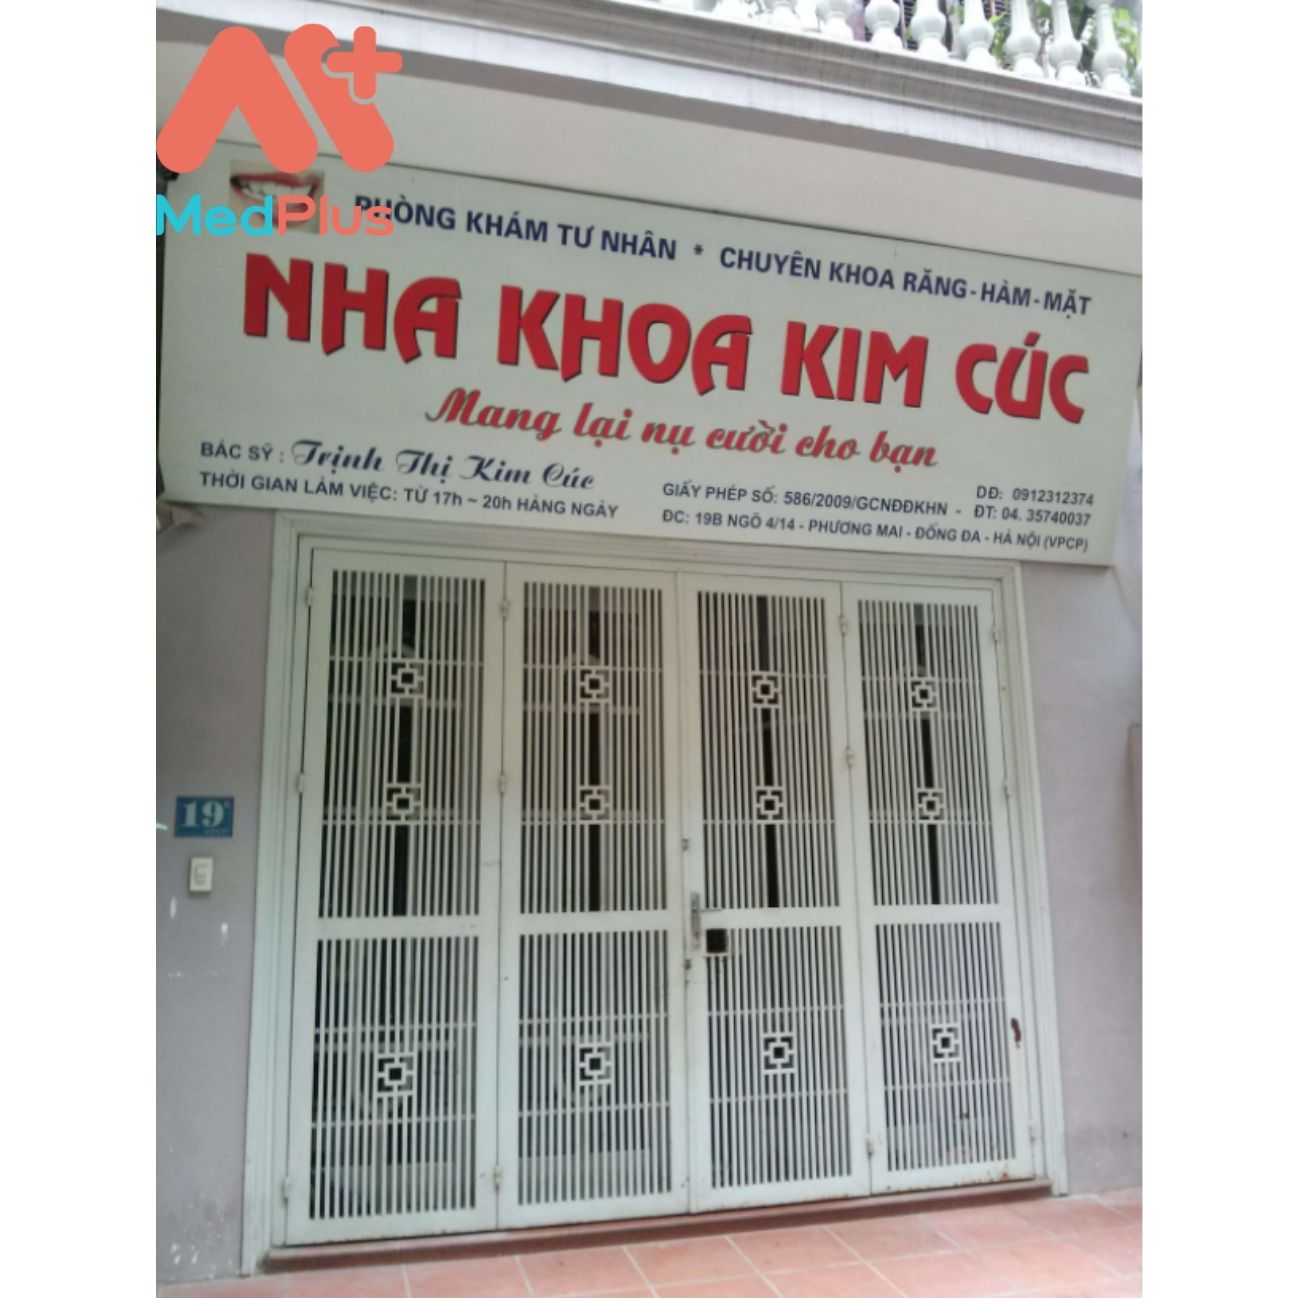 Nha khoa Kim Cúc - bác sĩ Trịnh Thị Kim Cúc - Medplus.vn